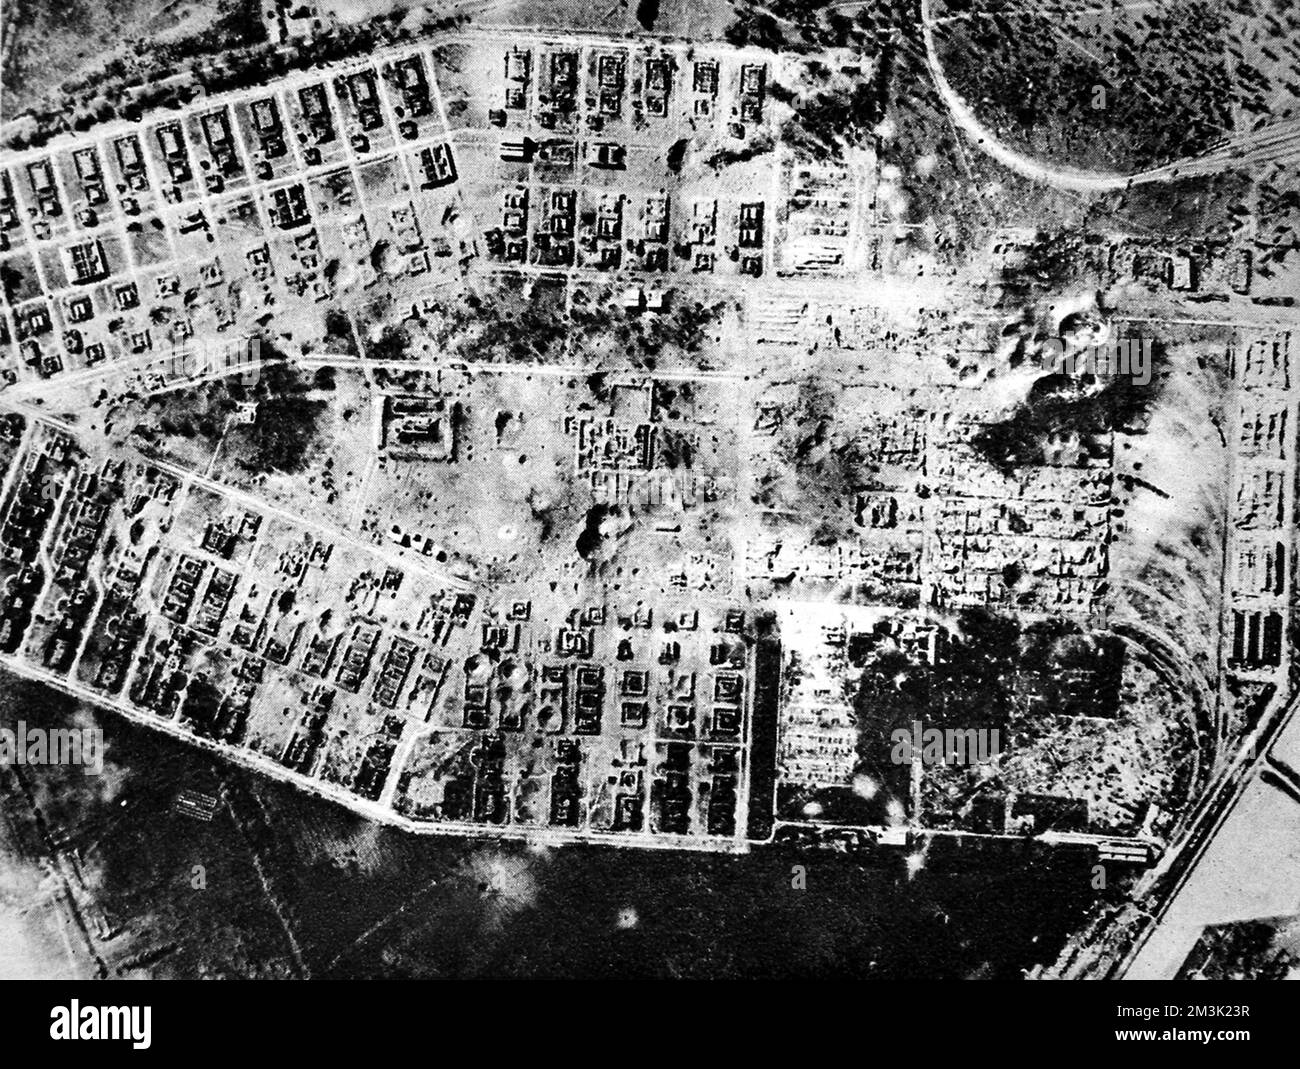 Luftfoto der zerstörten Sprengstoffwerke und Depots in Salbris, nahe Orleans, 1944. Dieses Depot befand sich im von den Nazis besetzten Frankreich und wurde von Bombern der Royal Air Force Lancaster kurz vor dem Fotografieren schwer überfallen. Datum: 1944 Stockfoto